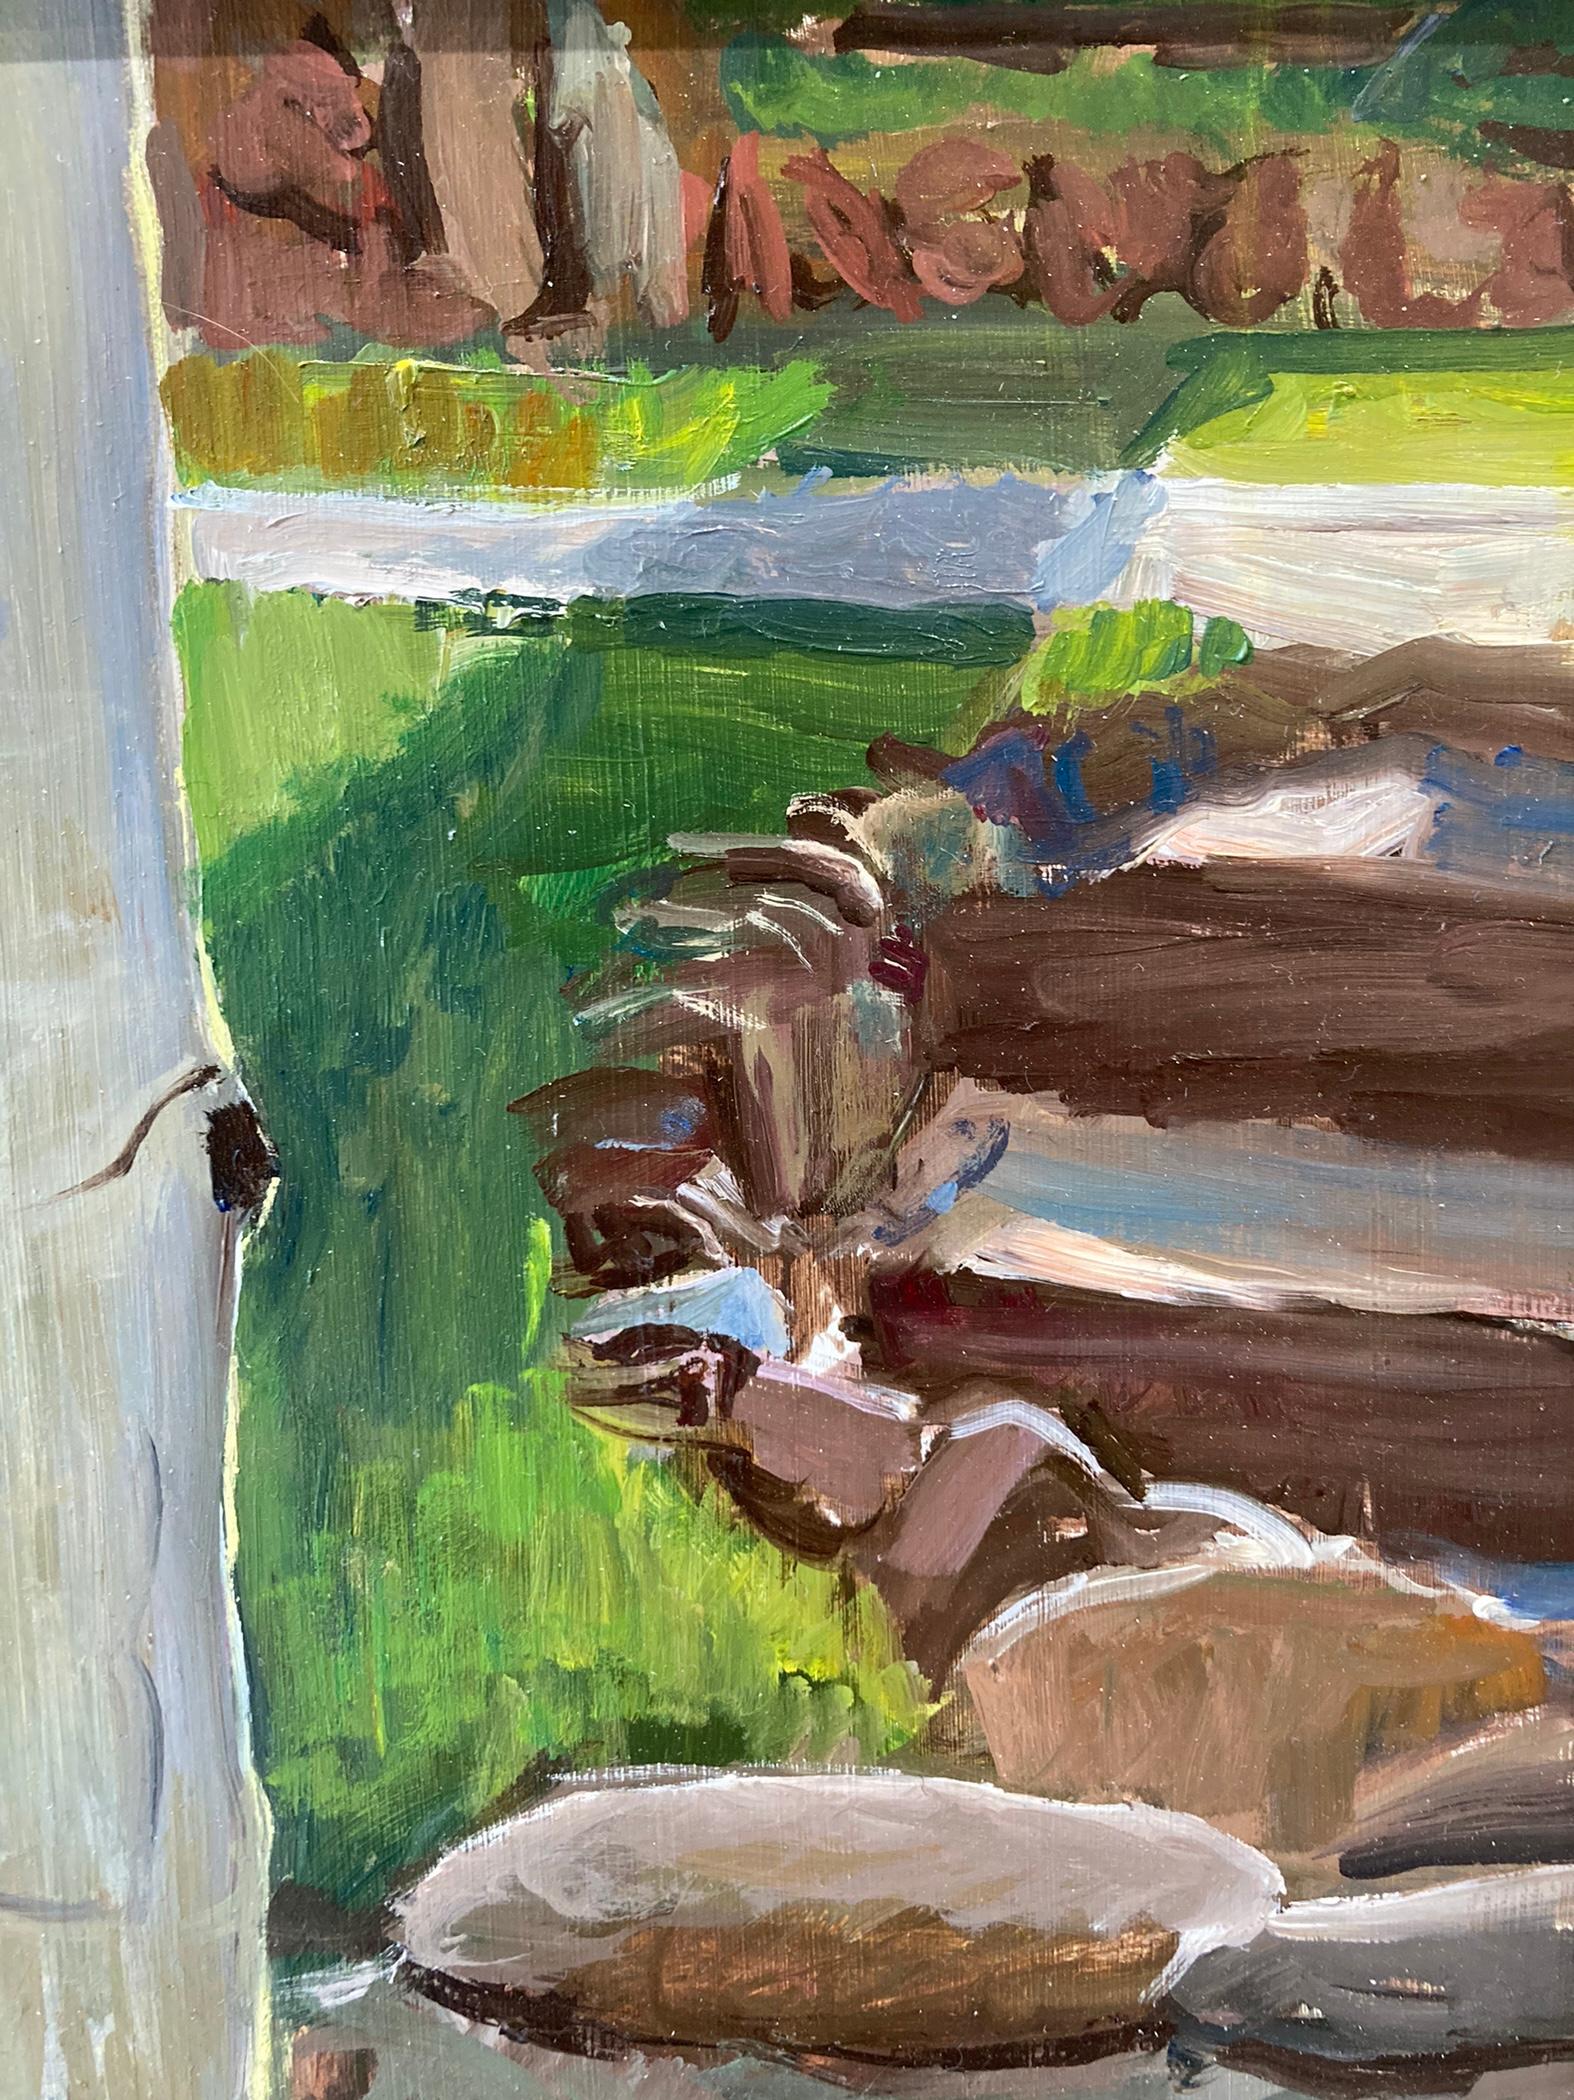 Peinture à l'huile représentant des coquelicots devant une paroi rocheuse. Le soleil couchant brille à travers les pétales et les fait briller d'un orange doré contre le feuillage plus sombre. Le soleil dessine des ombres sur la pelouse derrière le